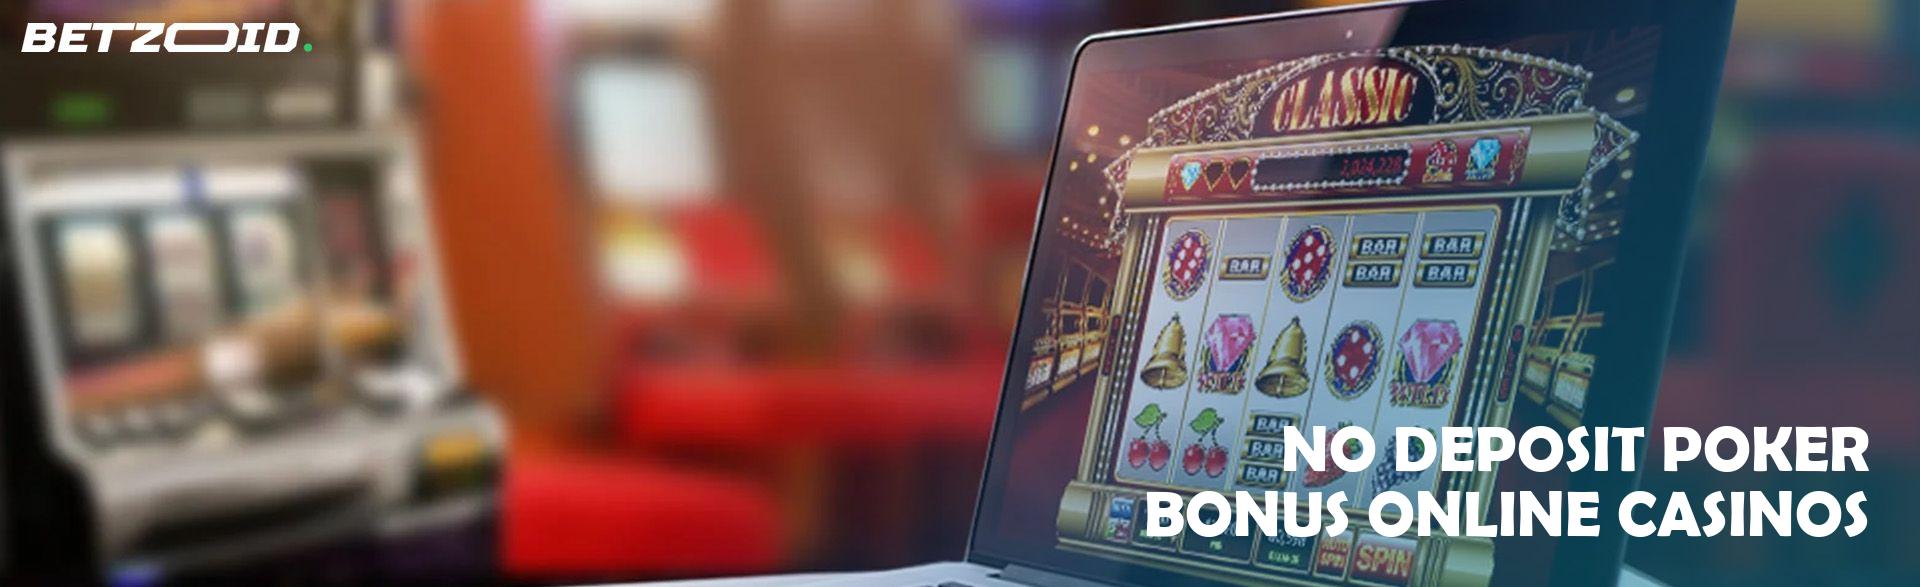 No Deposit Poker Bonus Online Casinos.